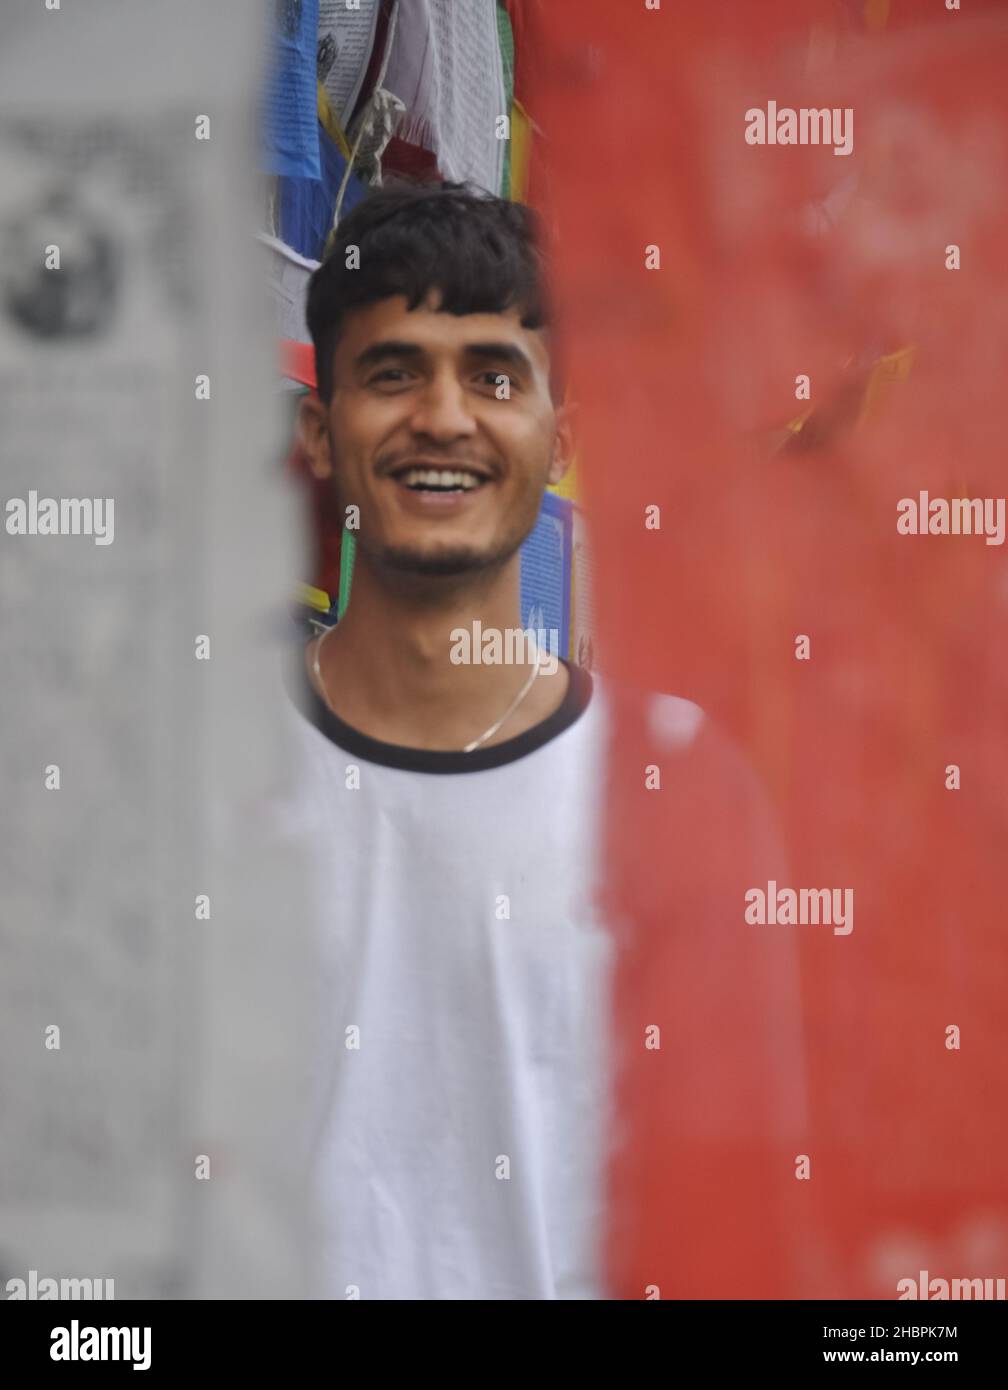 Selektiver Fokus eines glücklichen indischen jungen Mannes, der die Kamera anschaut, während er um buddhistische Gebetsfahnen steht Stockfoto